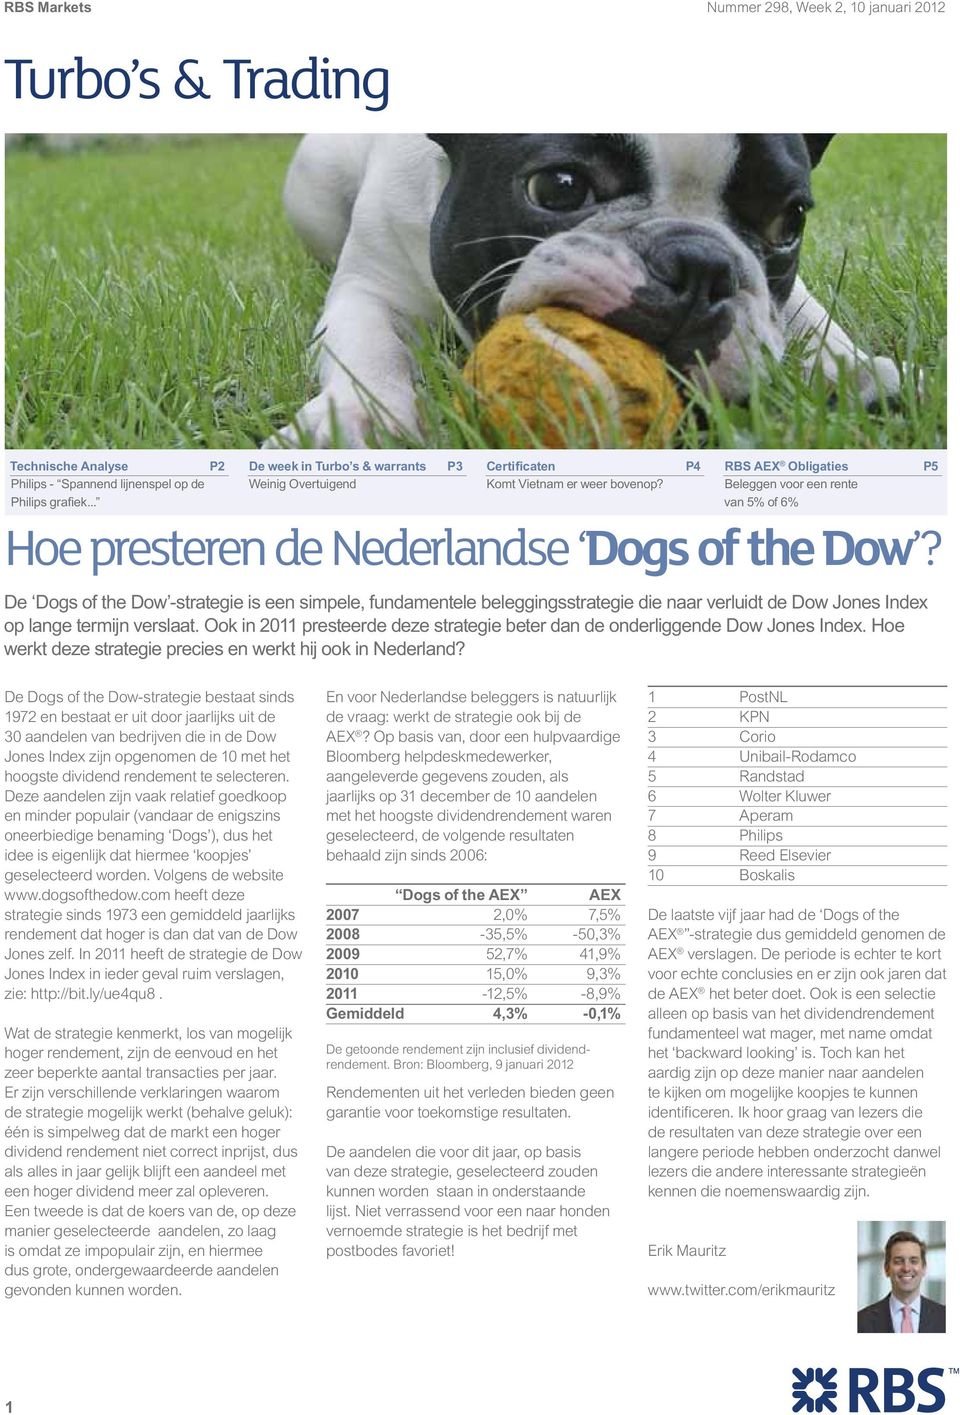 P4 RBS AEX Obligaties Beleggen voor een rente van 5% of 6% Hoe presteren de Nederlandse Dogs of the Dow?